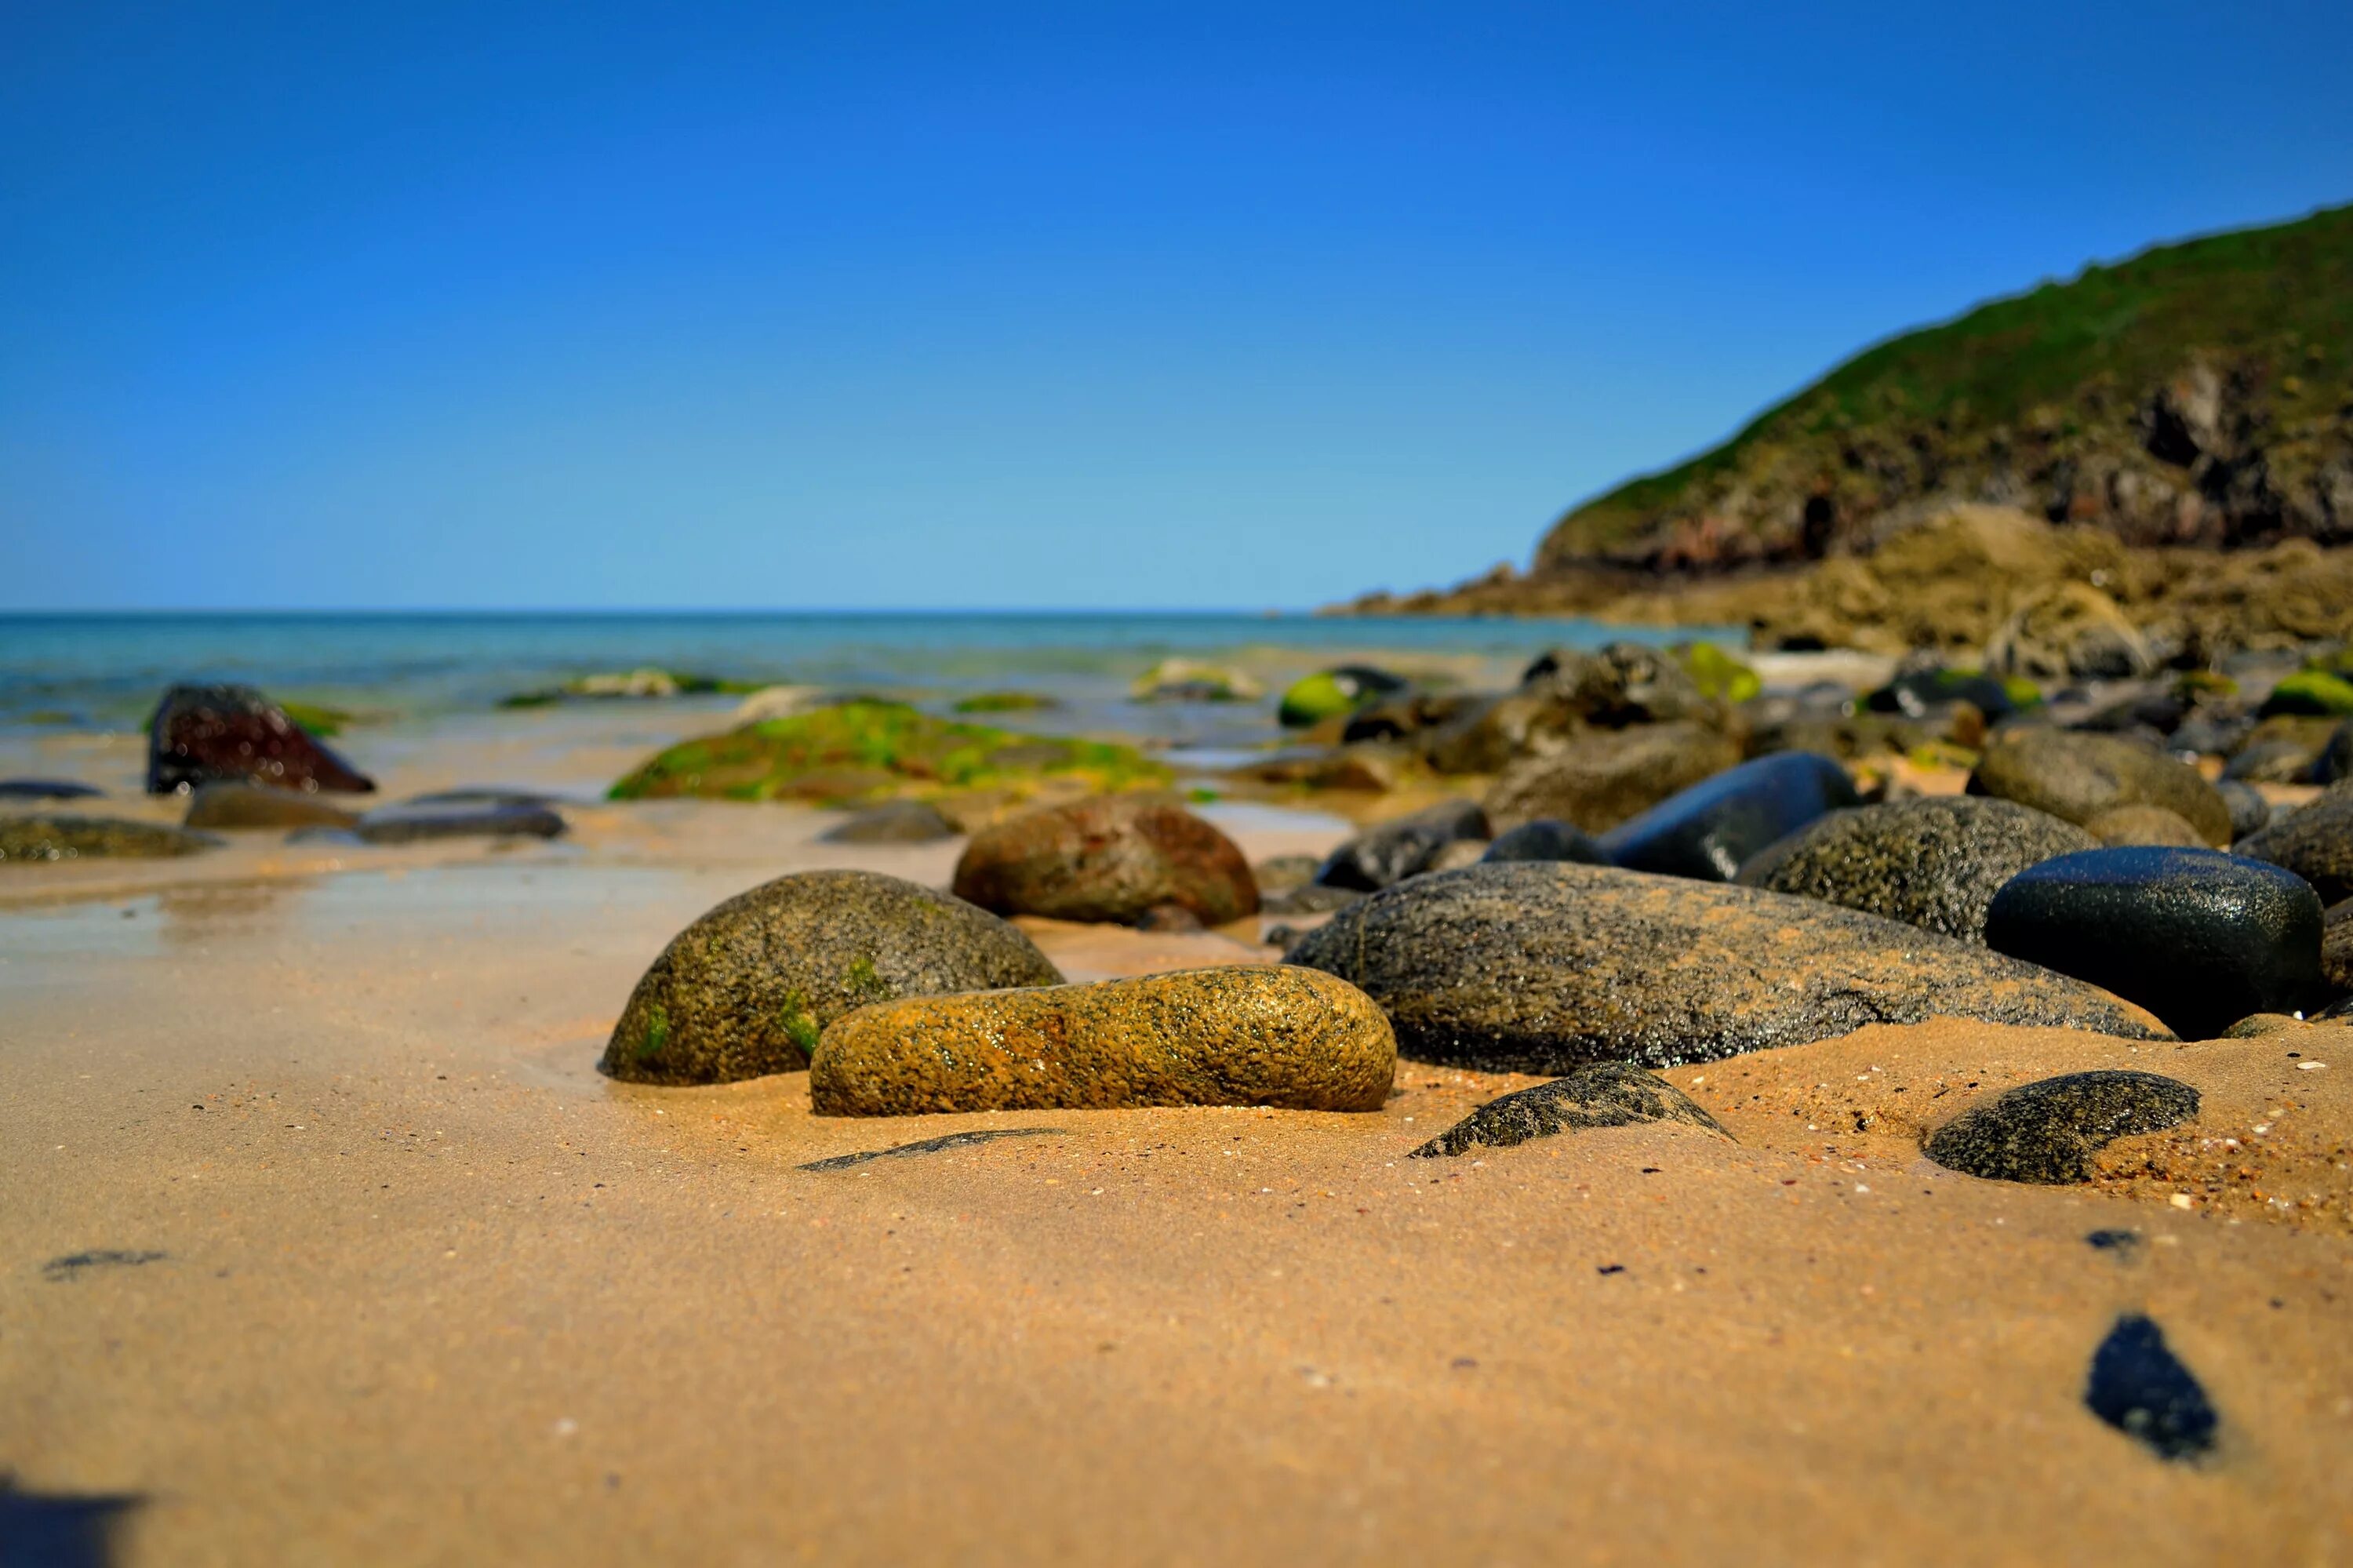 Live near the sea. Море камни. Камни на берегу моря. Камни на пляже. Камни на Песчаном берегу моря.